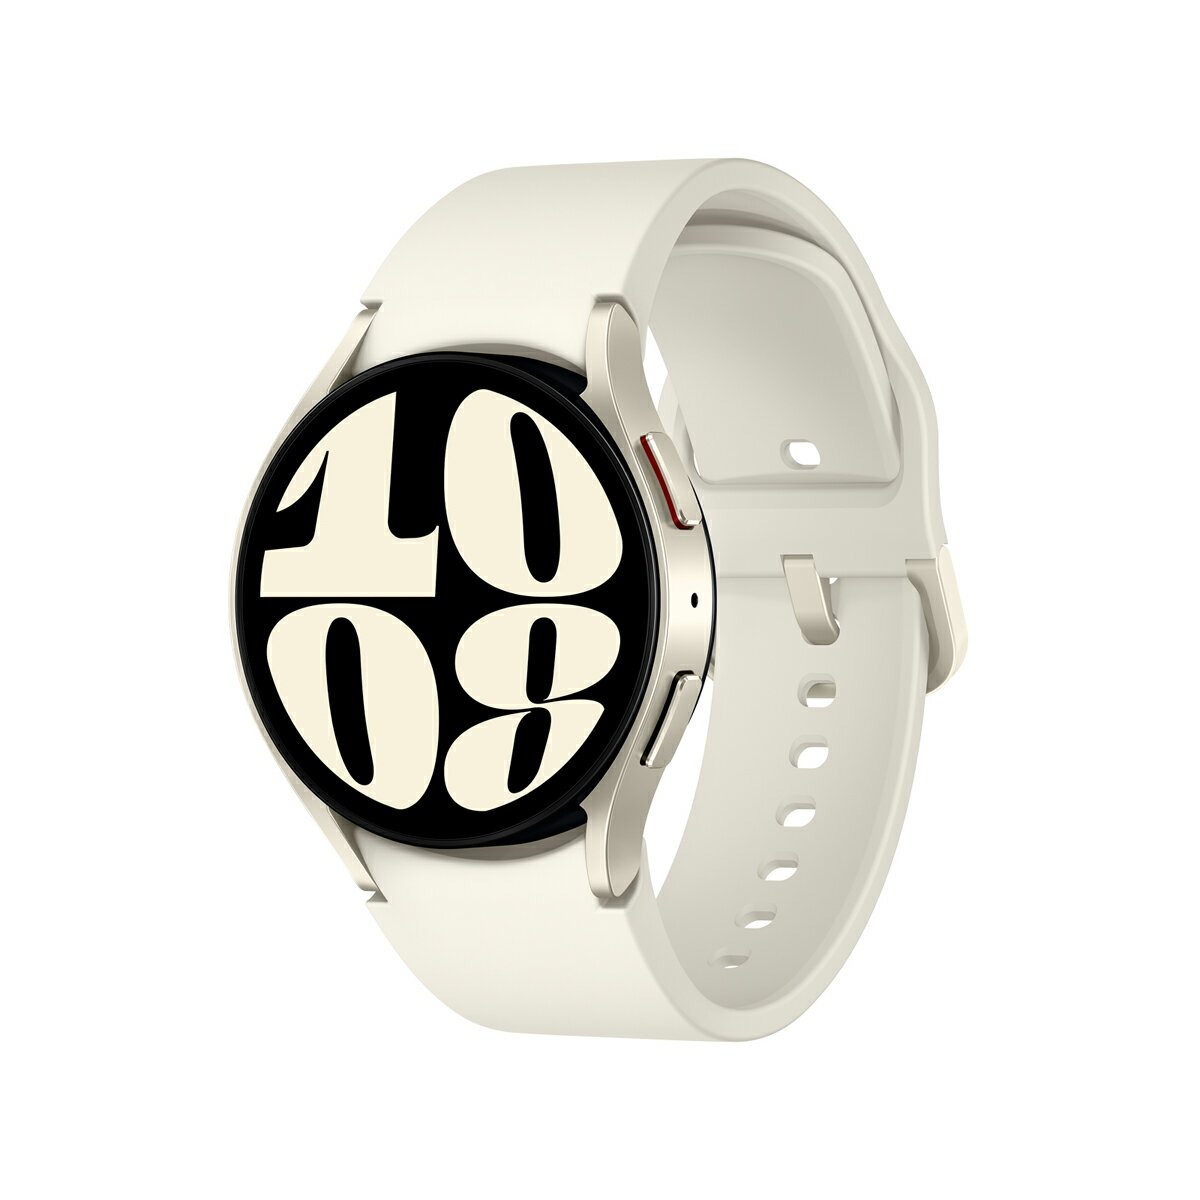 サムスン スマートウォッチ サムスン 【国内正規品】SAMSUNG Galaxy Watch6/Aluminum/Gold/40mm 【Suica対応】 スマートウォッチ SM-R930NZEAXJP [SMR930NZEAXJP]【返品種別A】